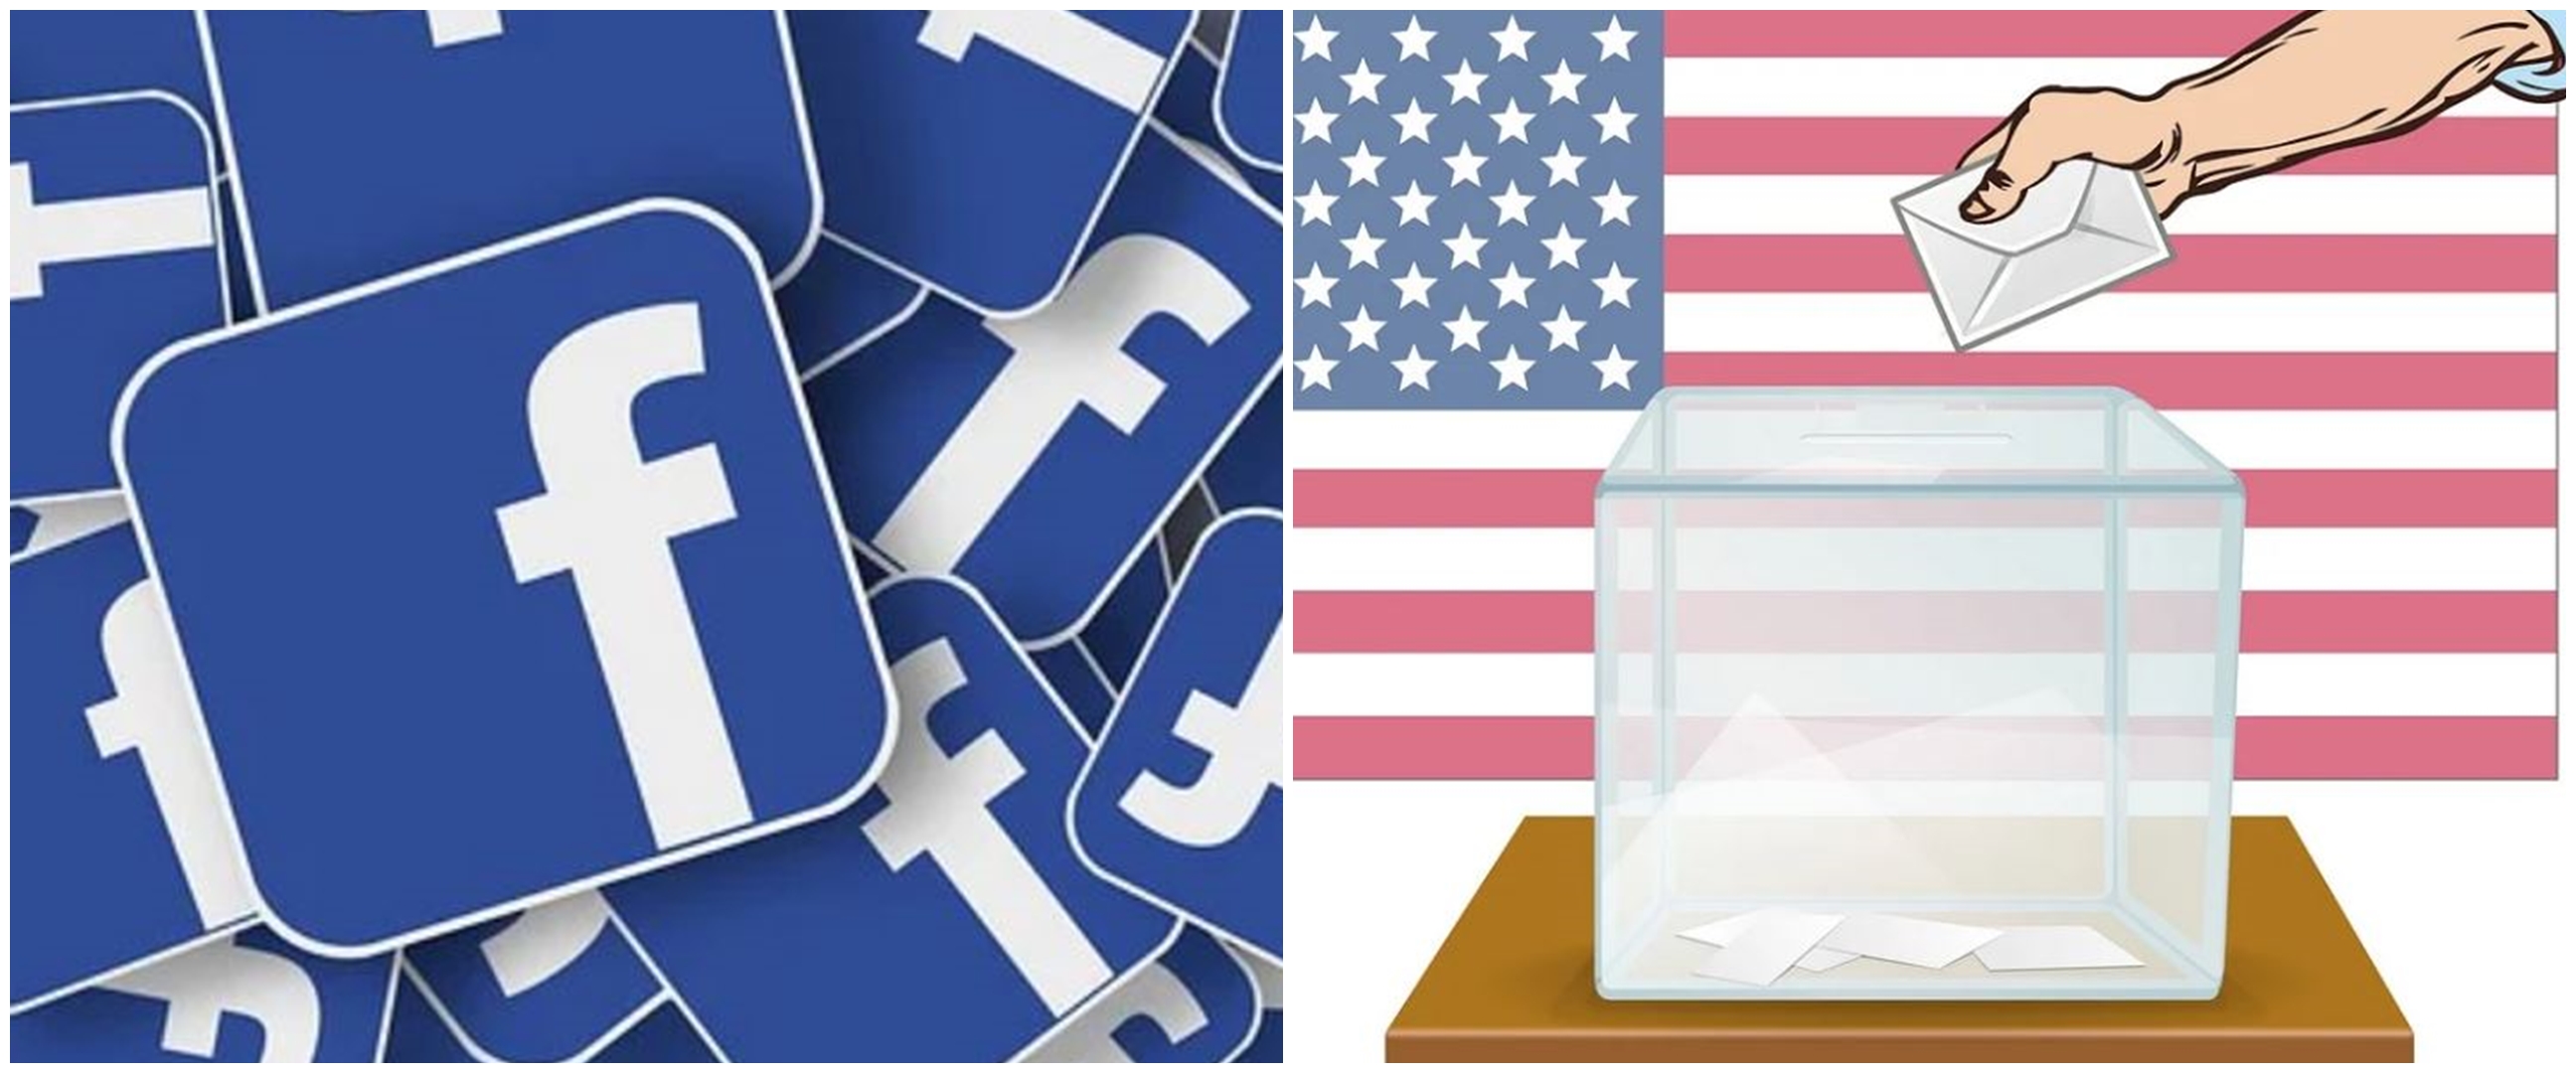 Facebook akan umumkan hasil Pilpres AS via notifikasi FB dan Instagram